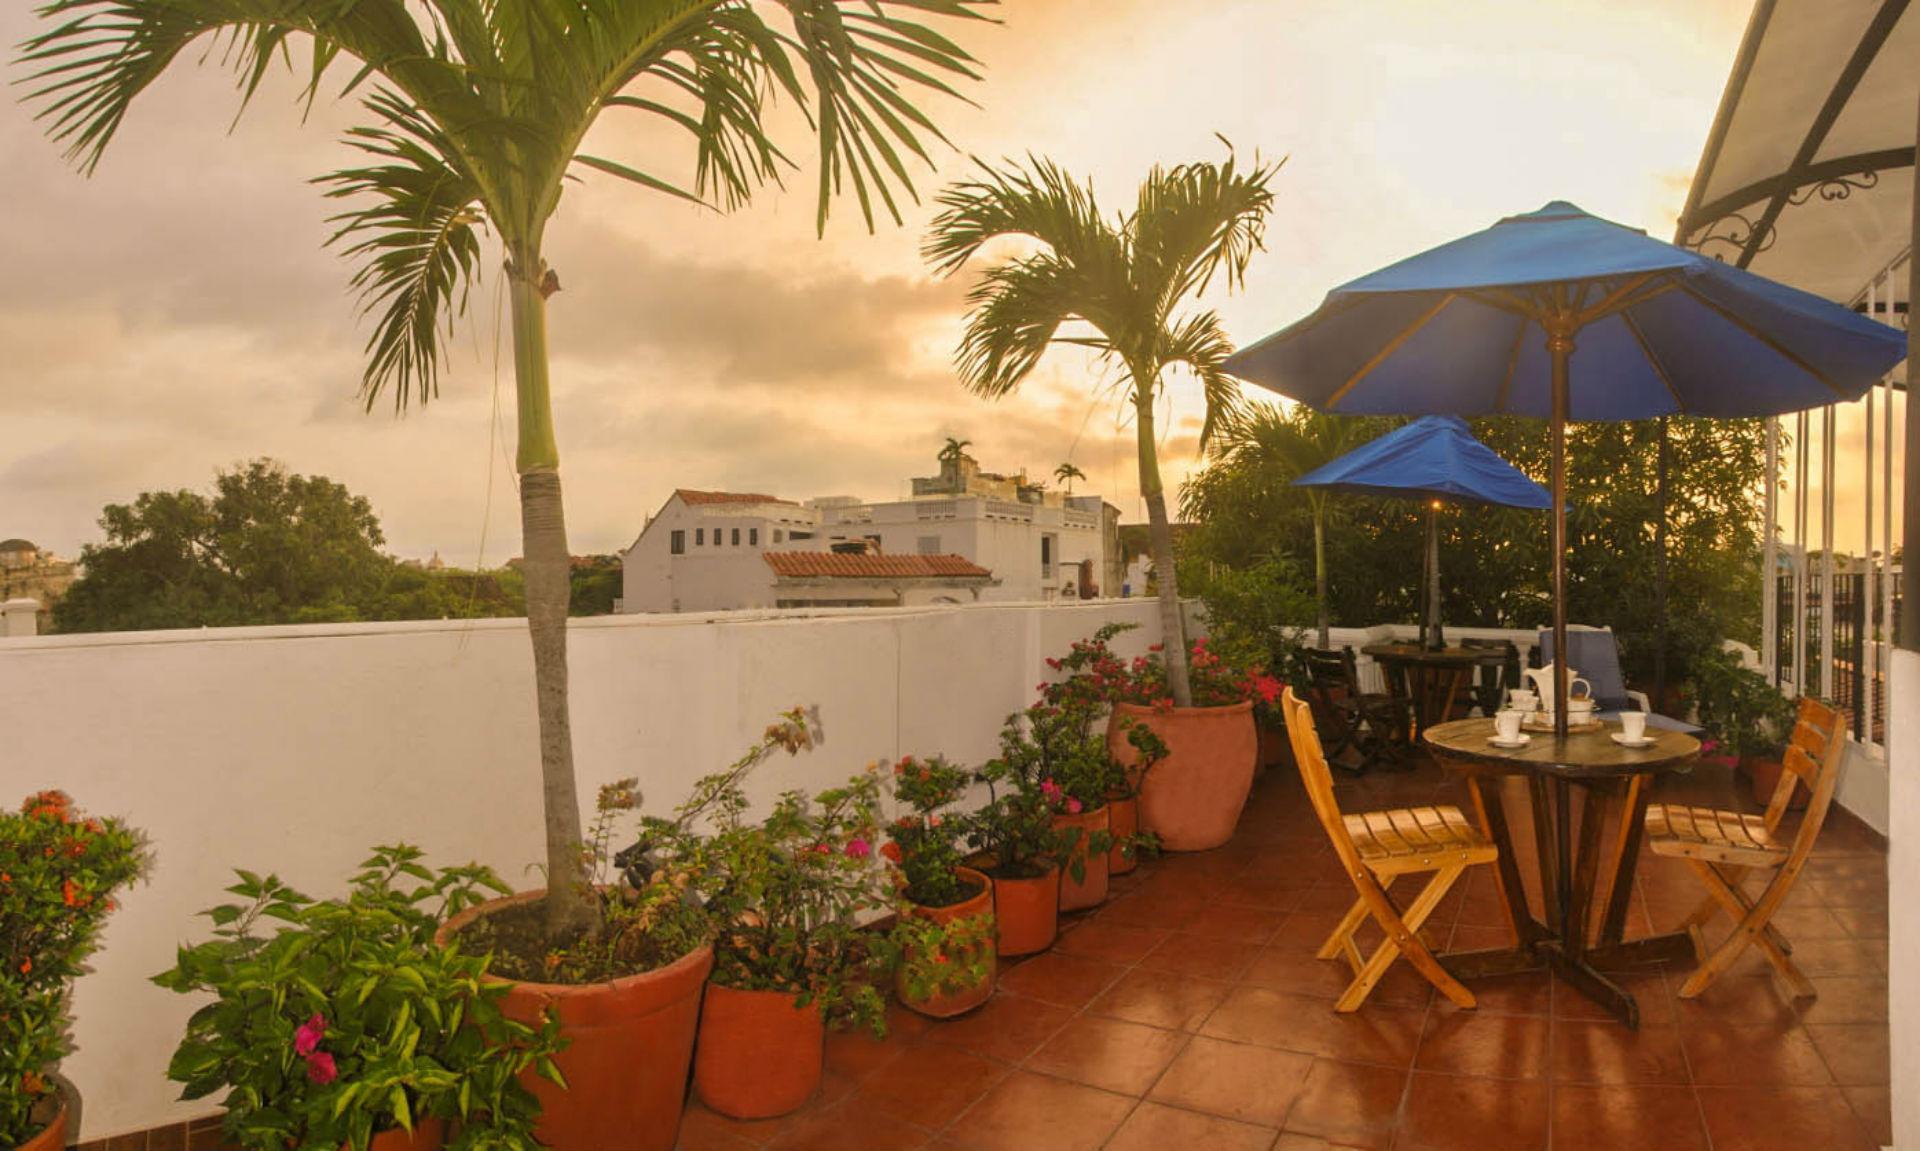 Hotel 3 Banderas Cartagena Bagian luar foto